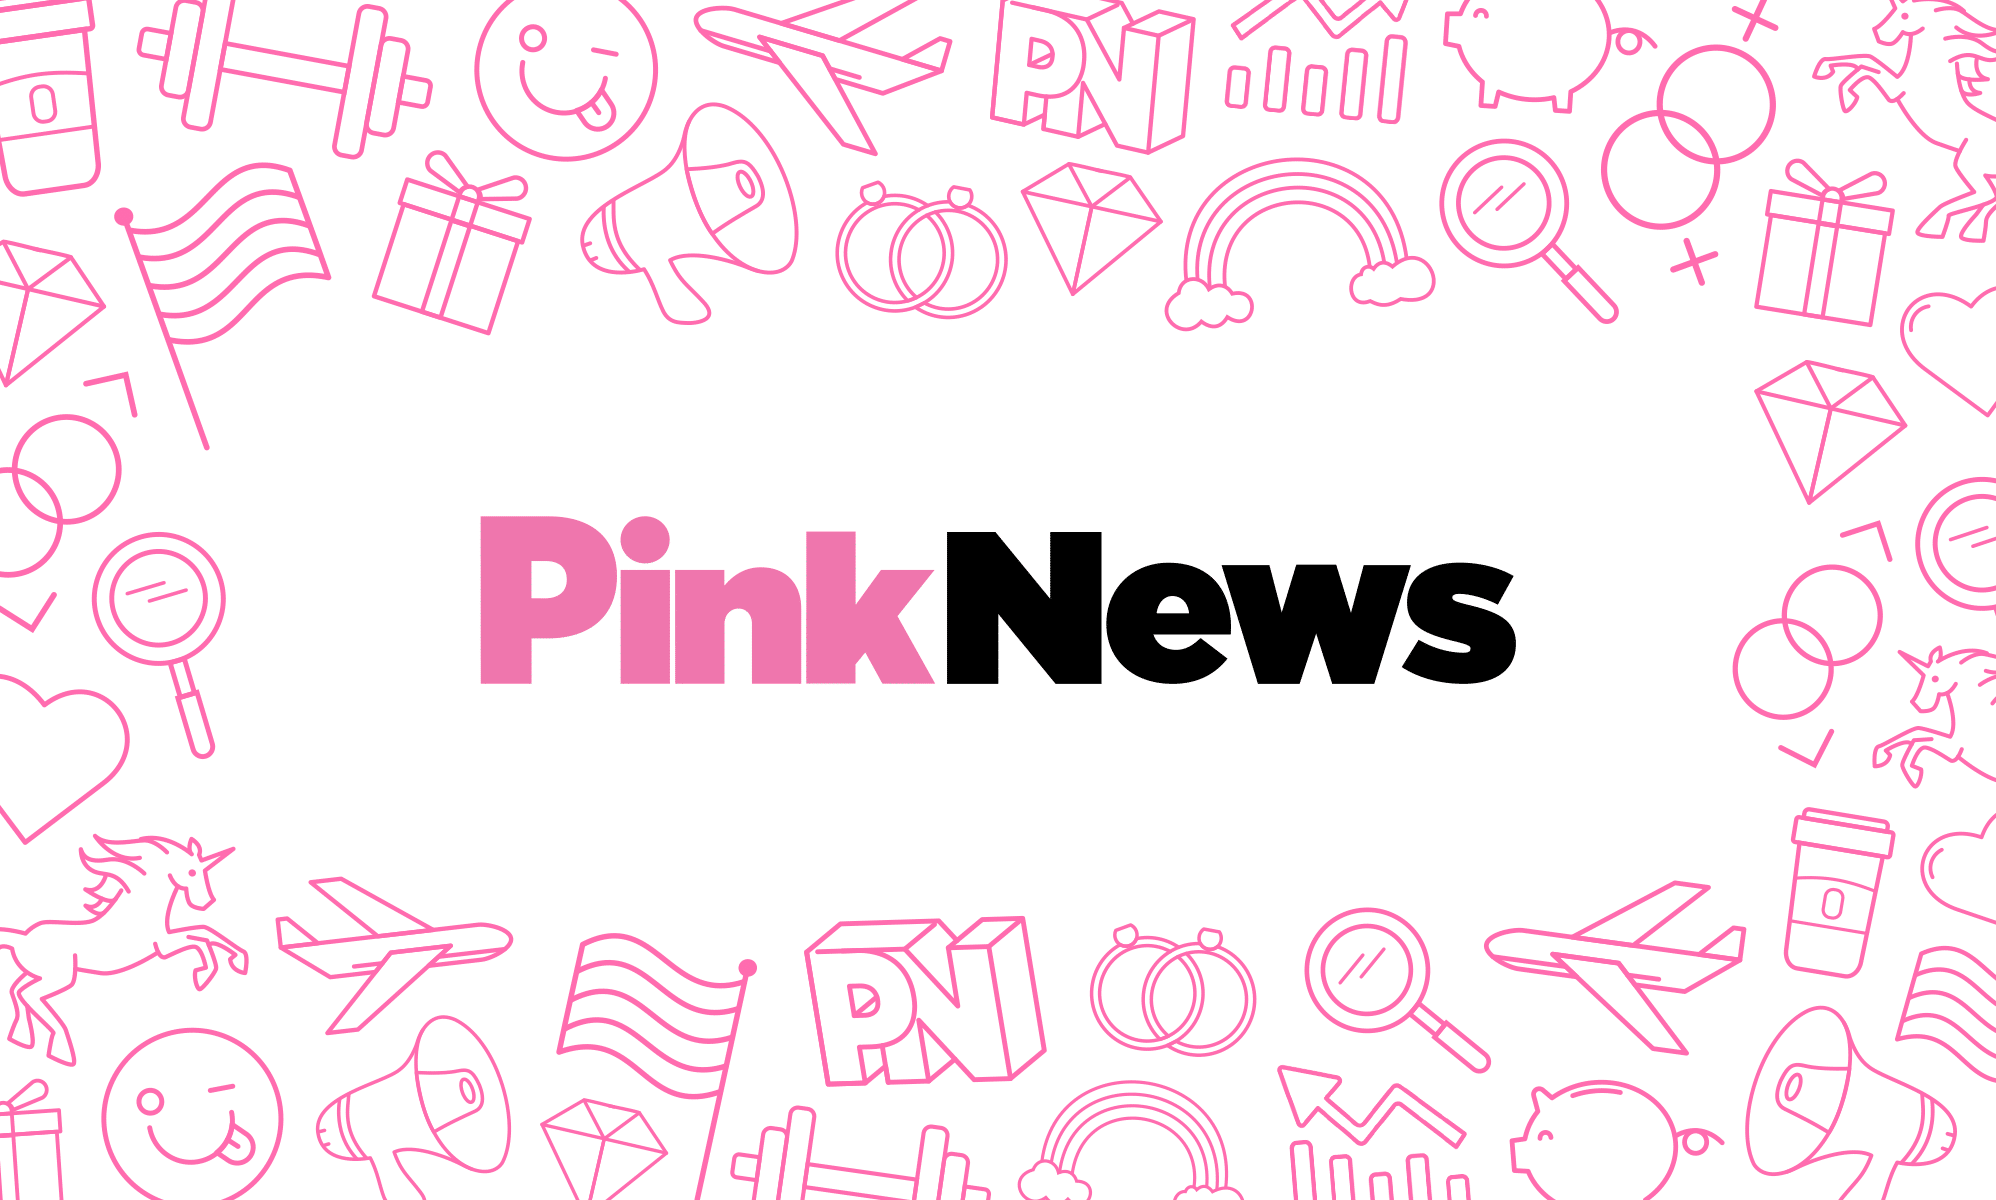 www.pinknews.co.uk